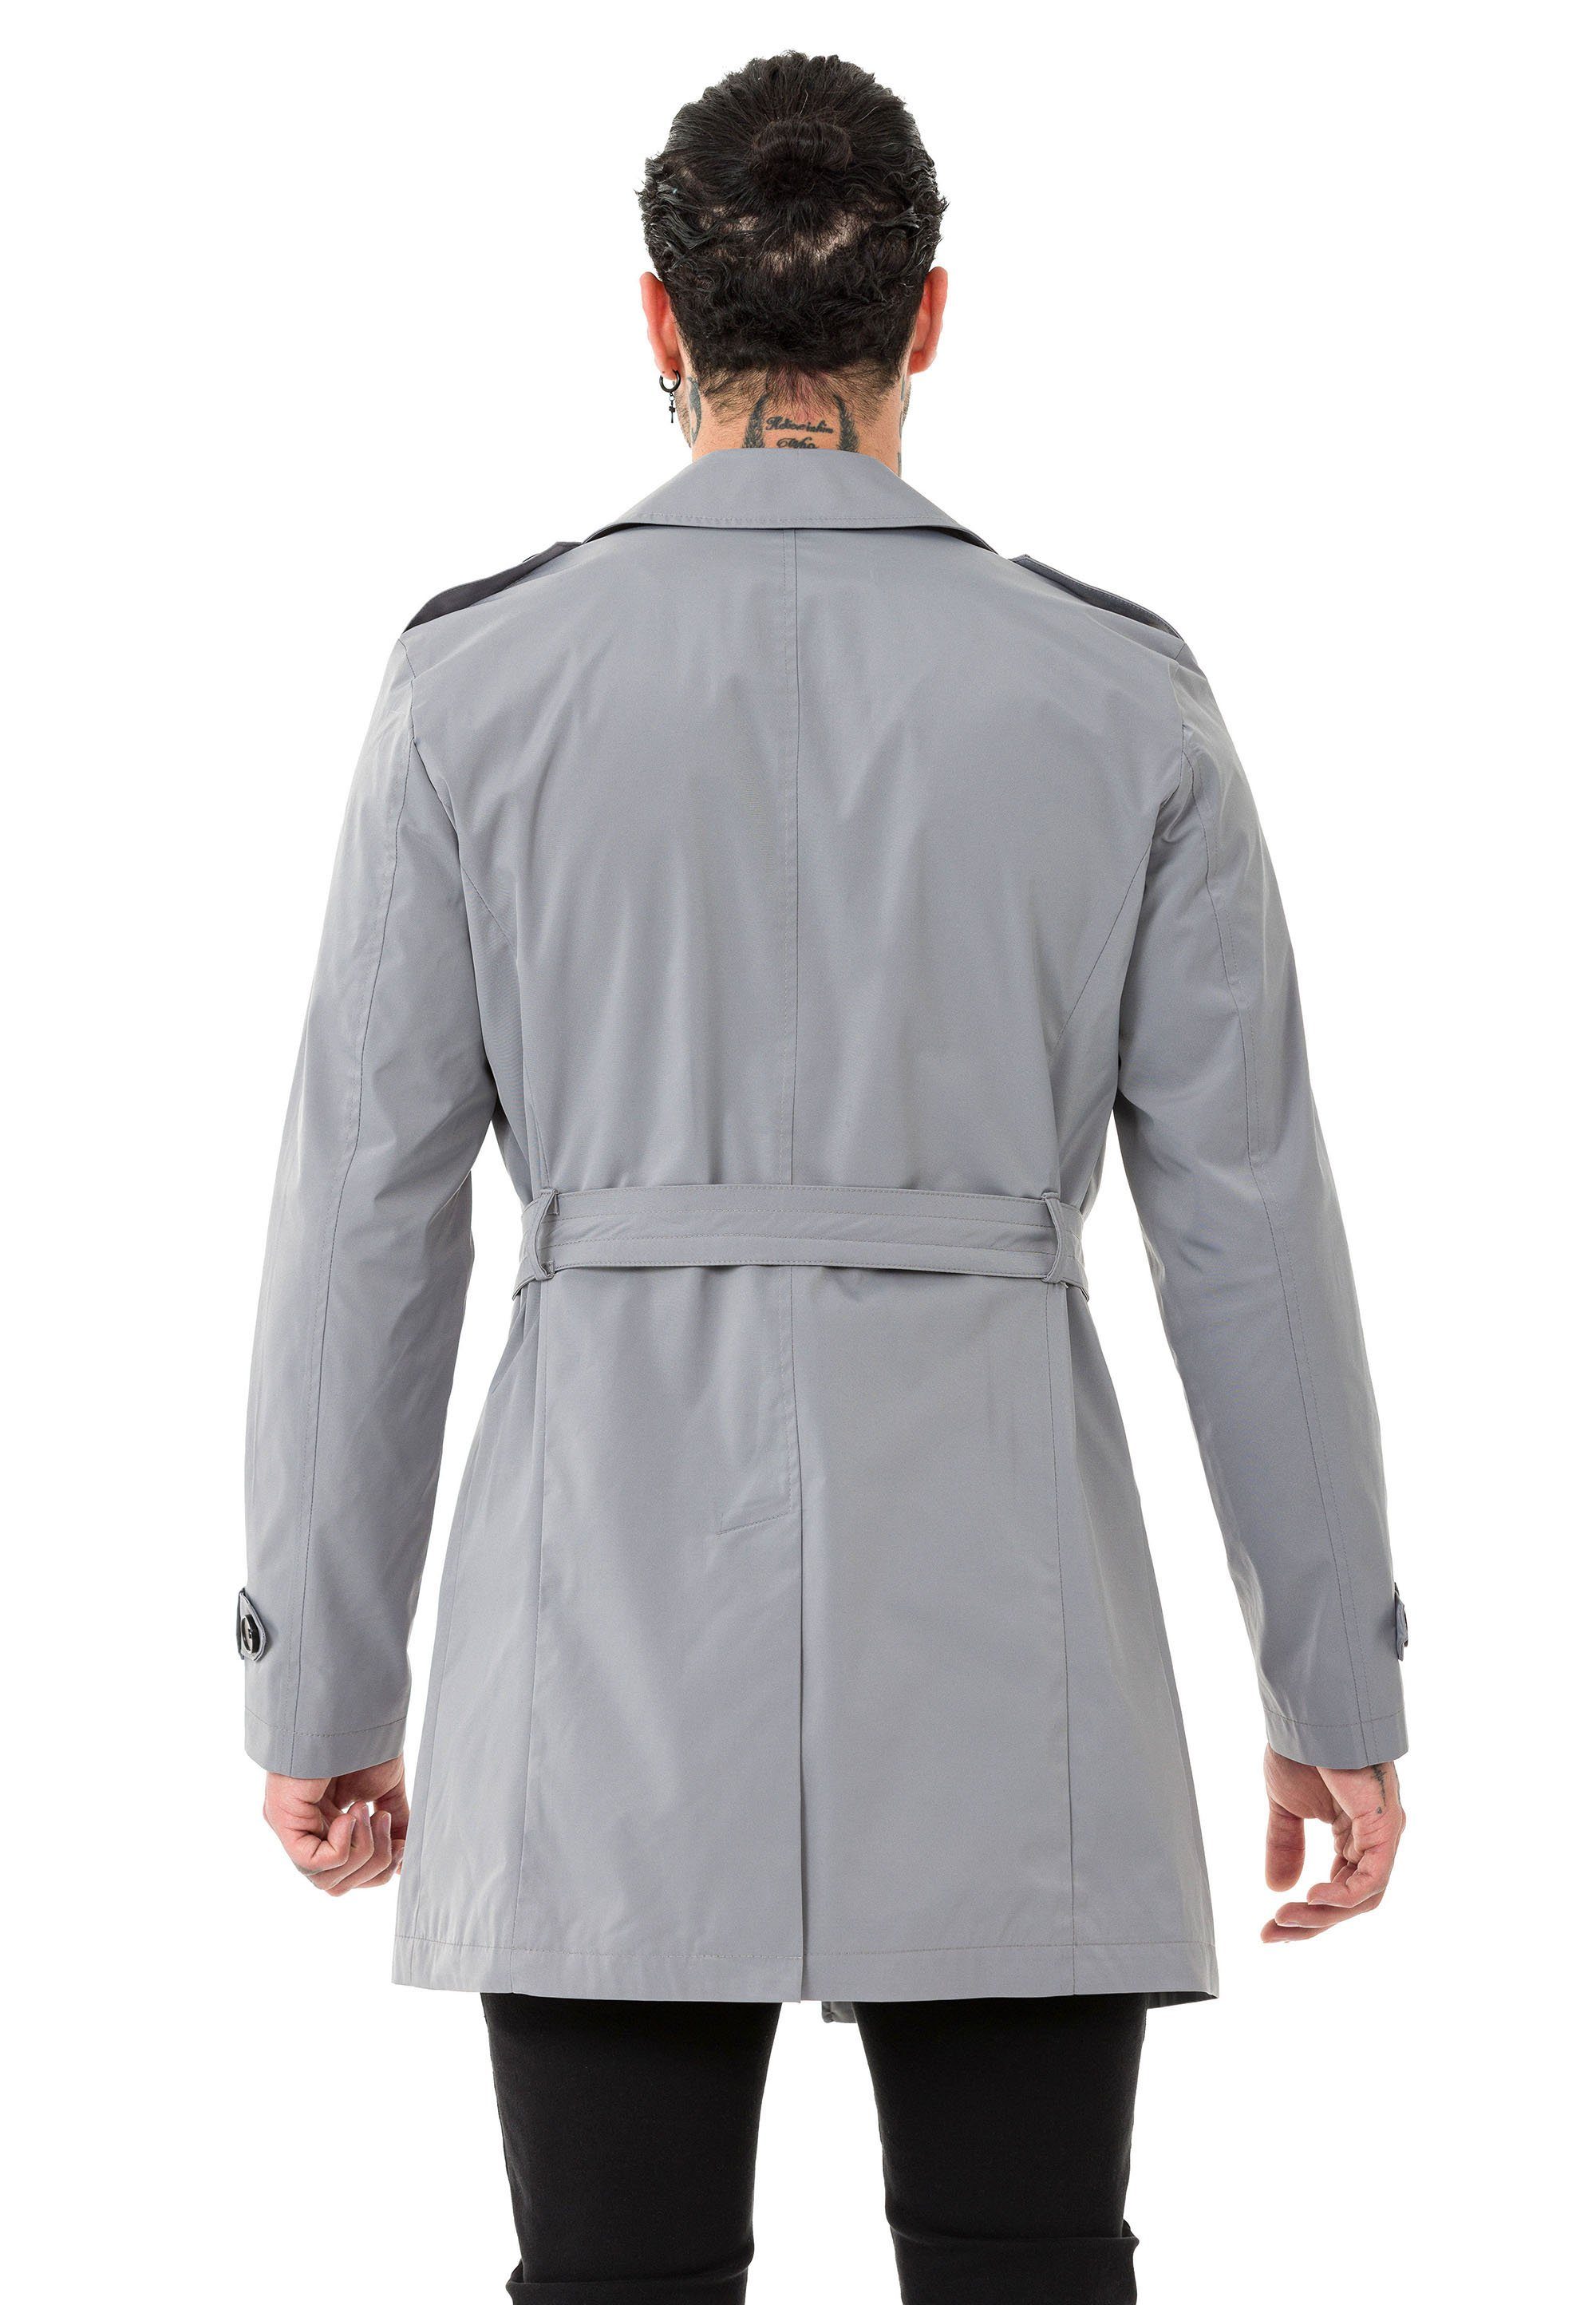 Grau mit Trenchcoat Premium Gürtelschnalle RedBridge Mantel Qualität